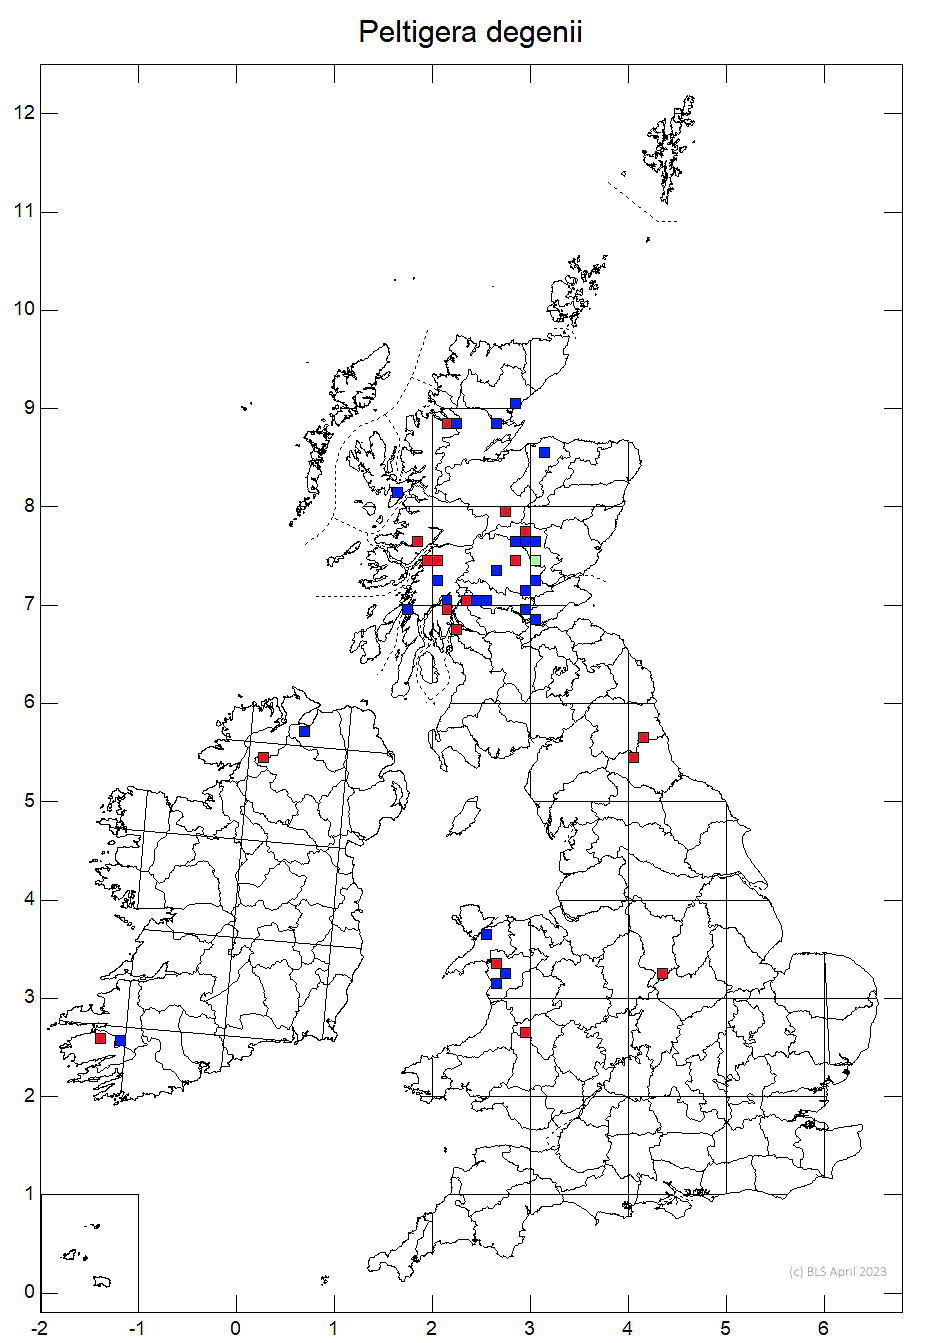 Peltigera degenii 10km sq distribution map